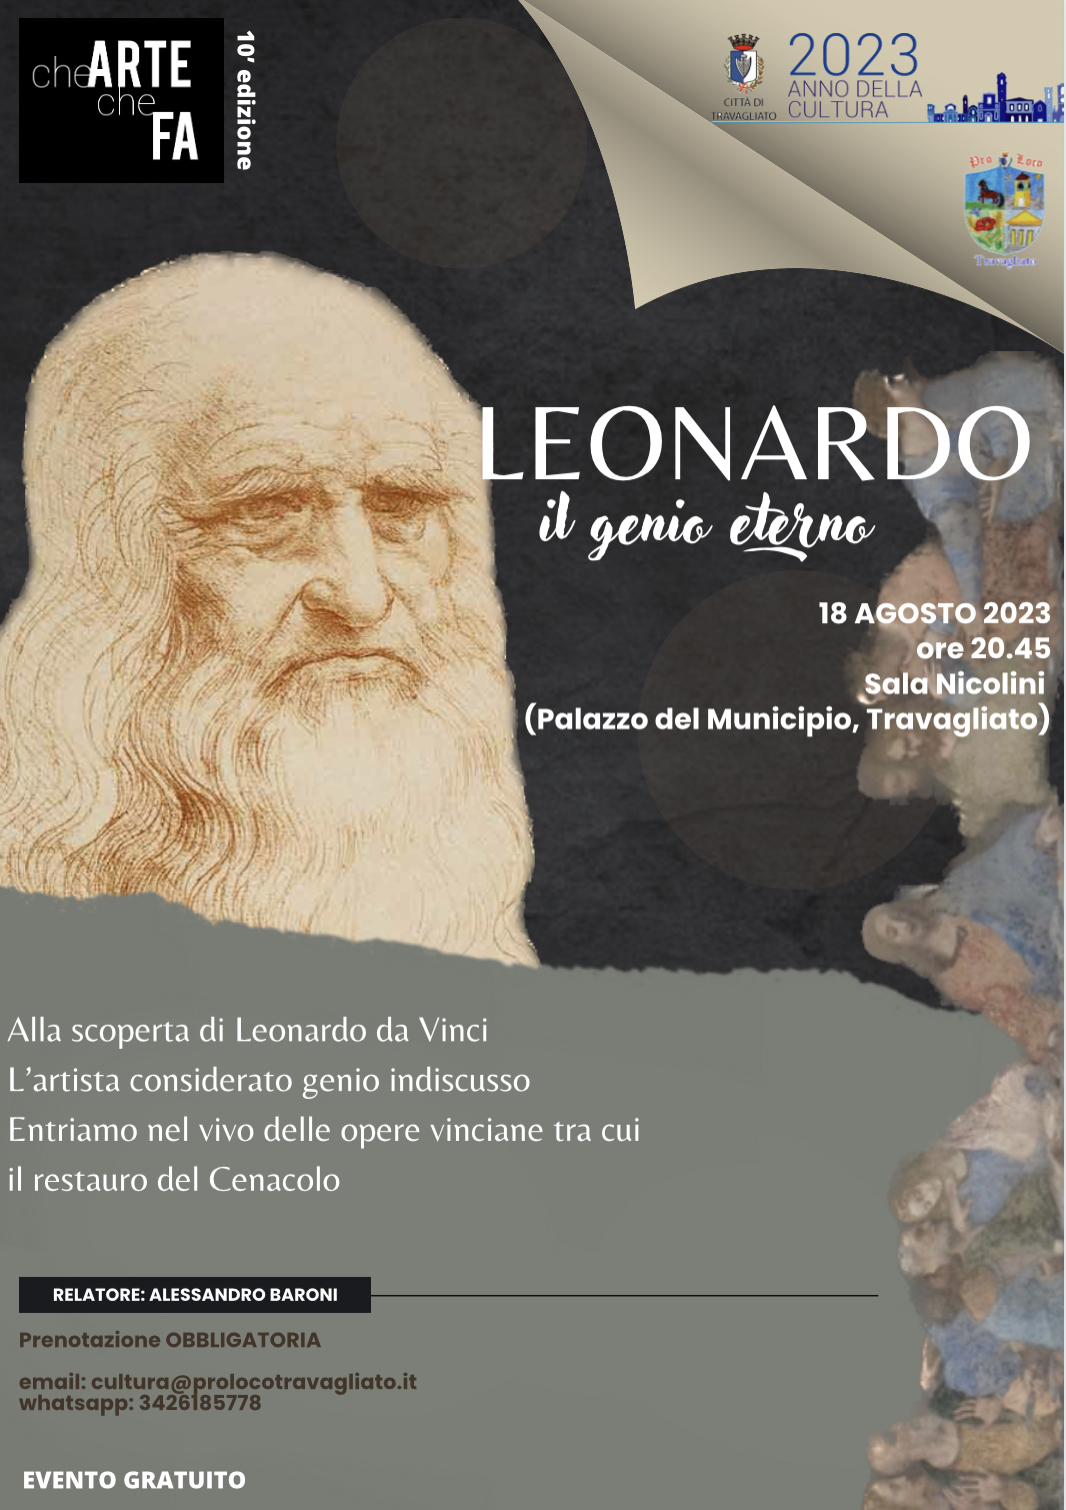 Leonardo, il genio eterno